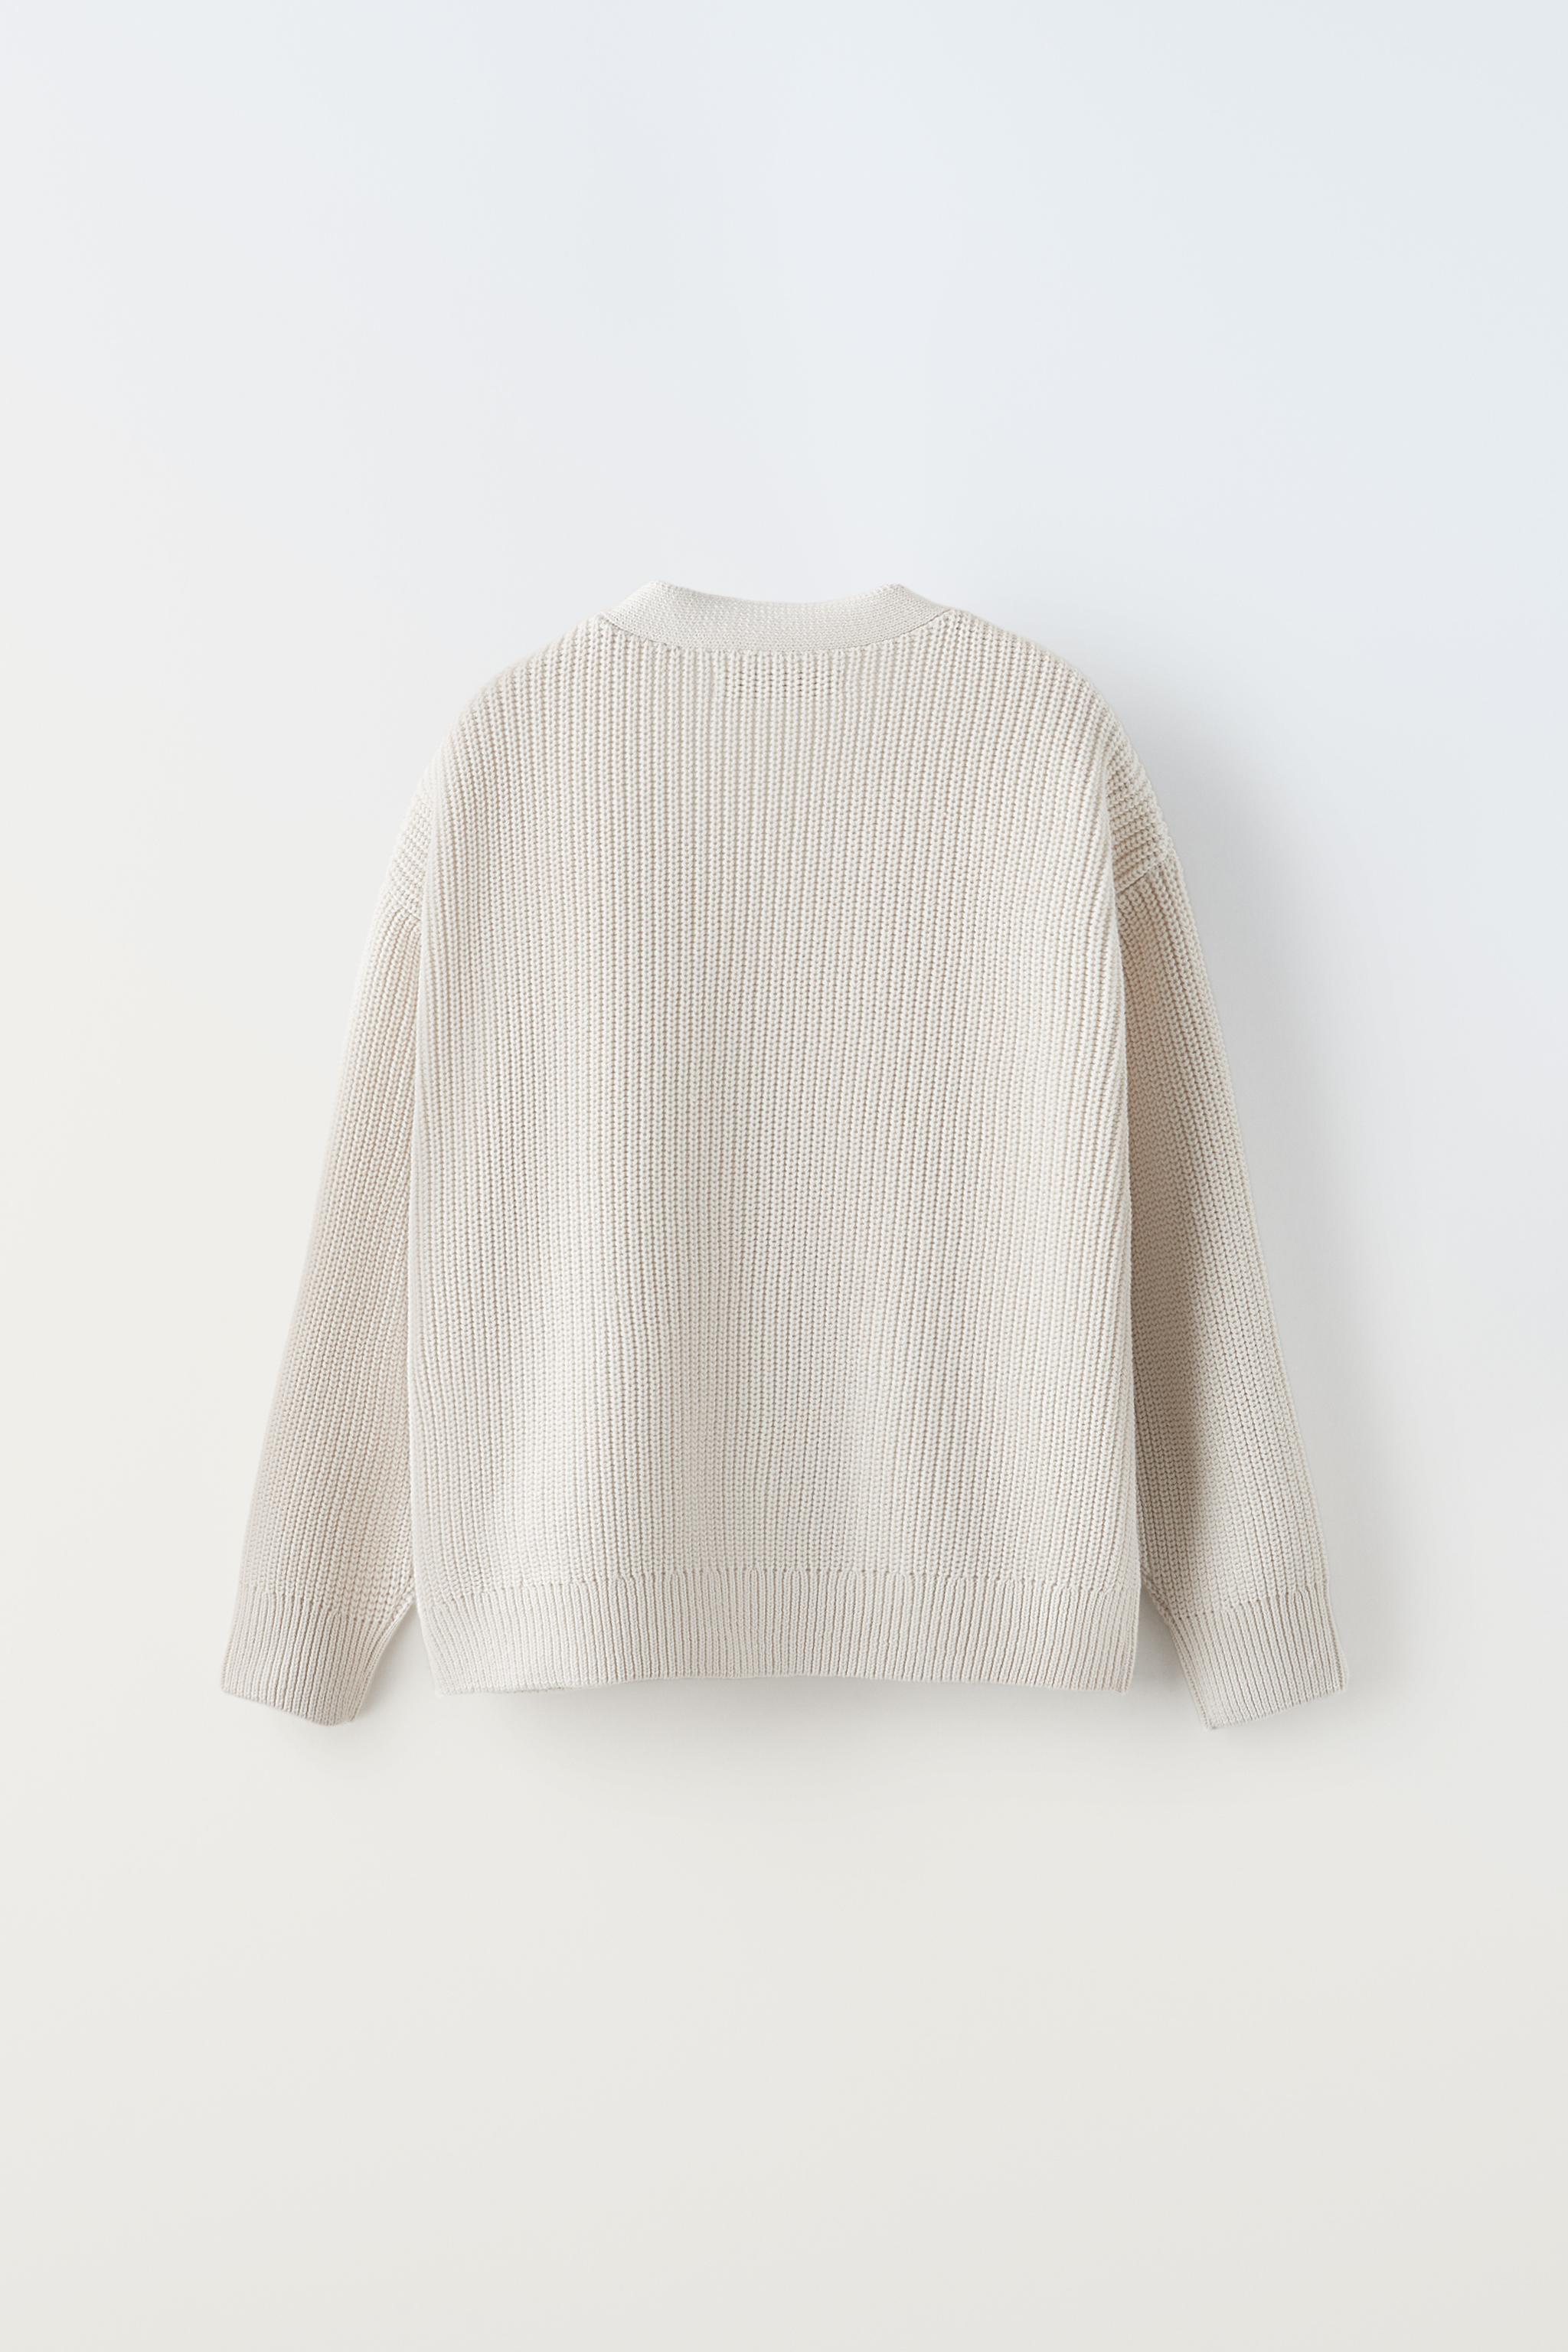 White Sweater Rib Knit